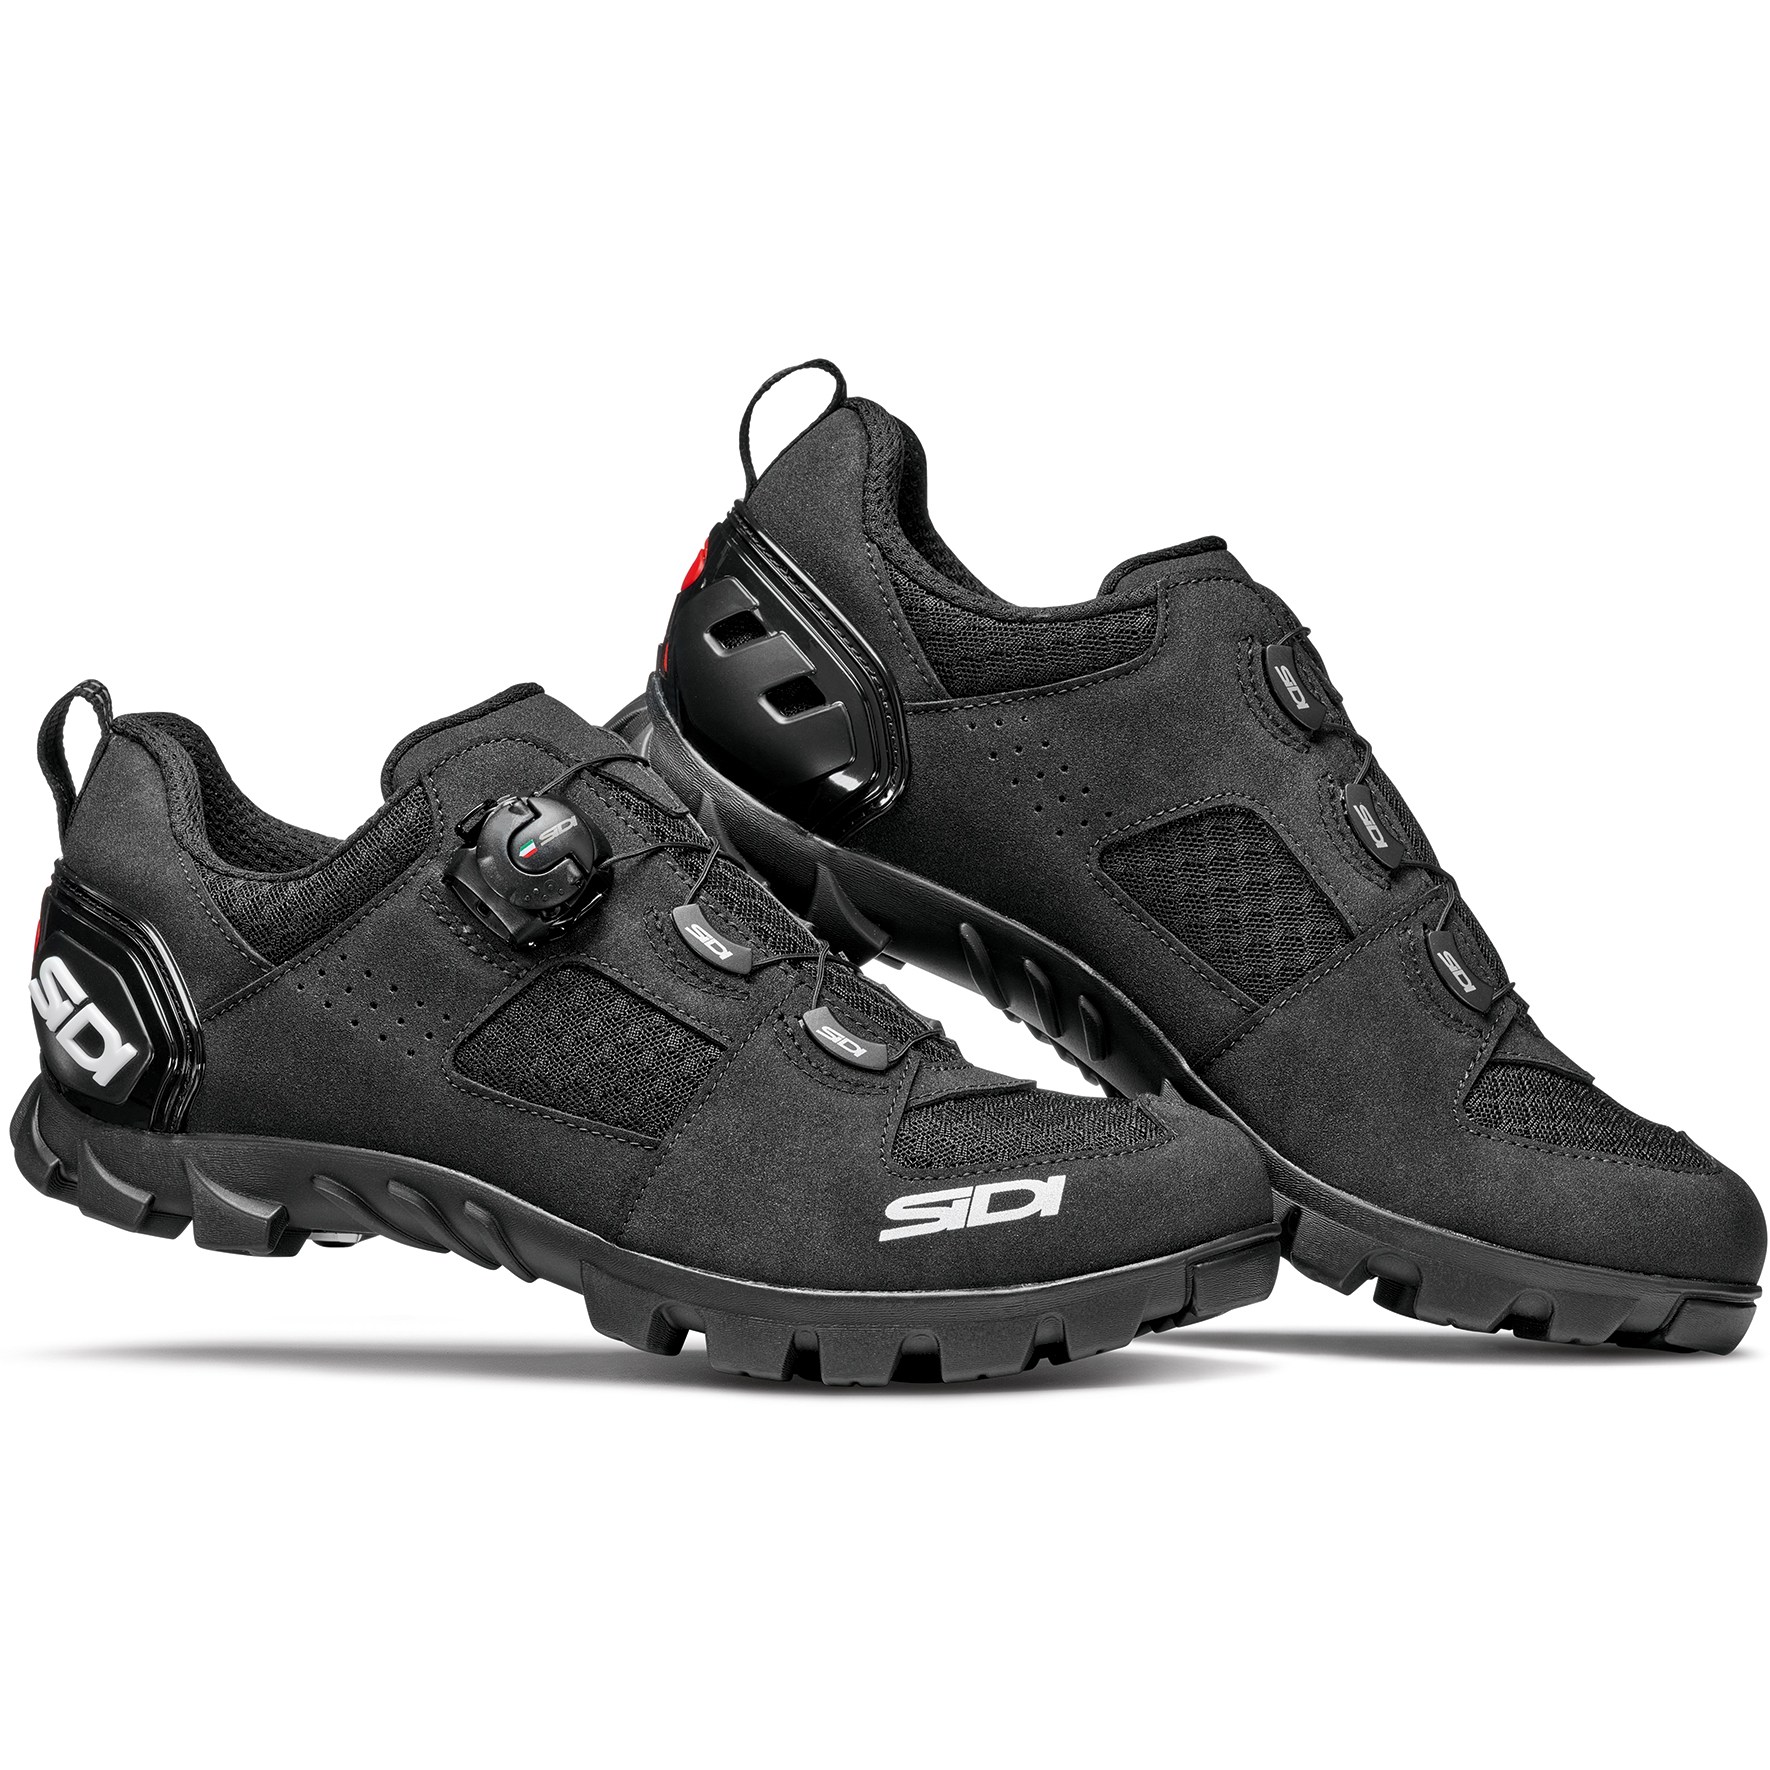 Produktbild von Sidi Turbo MTB Schuhe - schwarz/schwarz